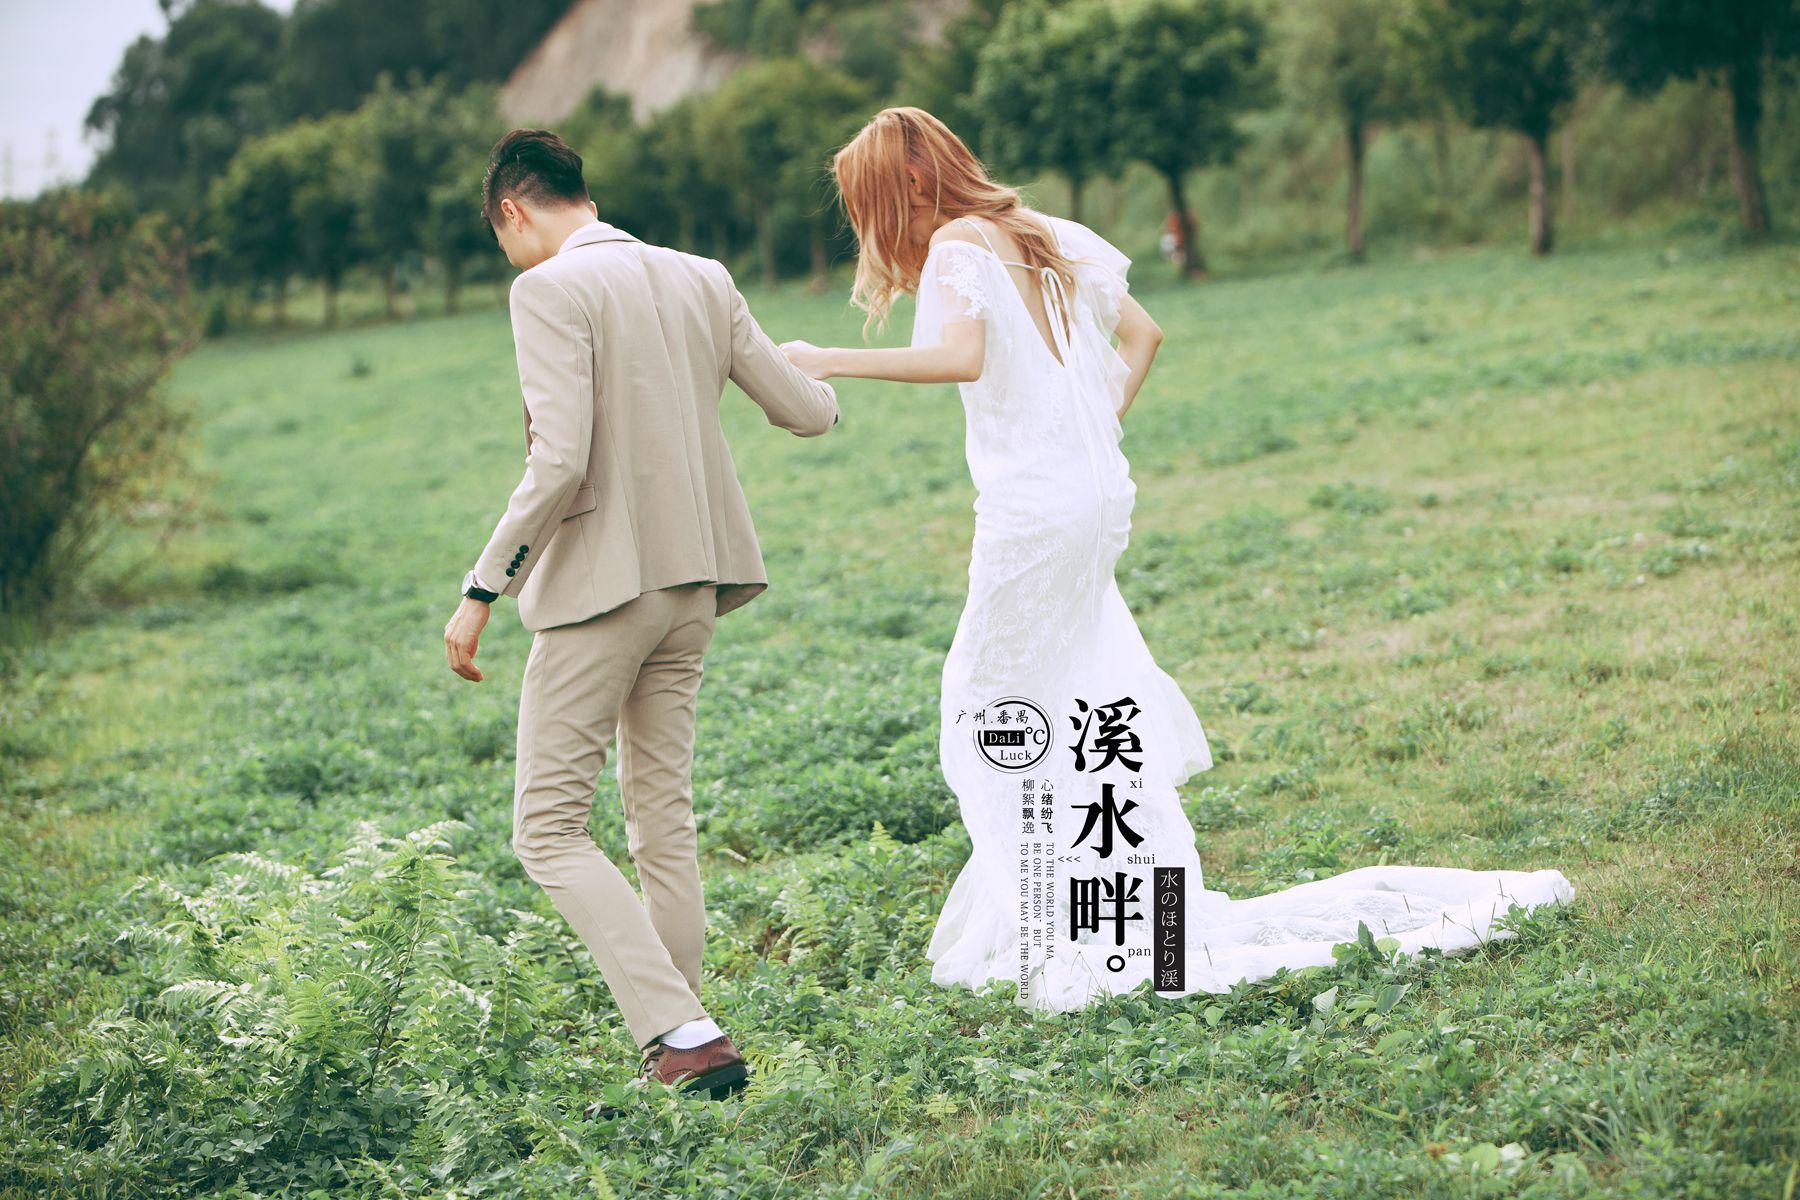 2017年7月广州婚纱照,云浮婚纱照,婚纱照图片